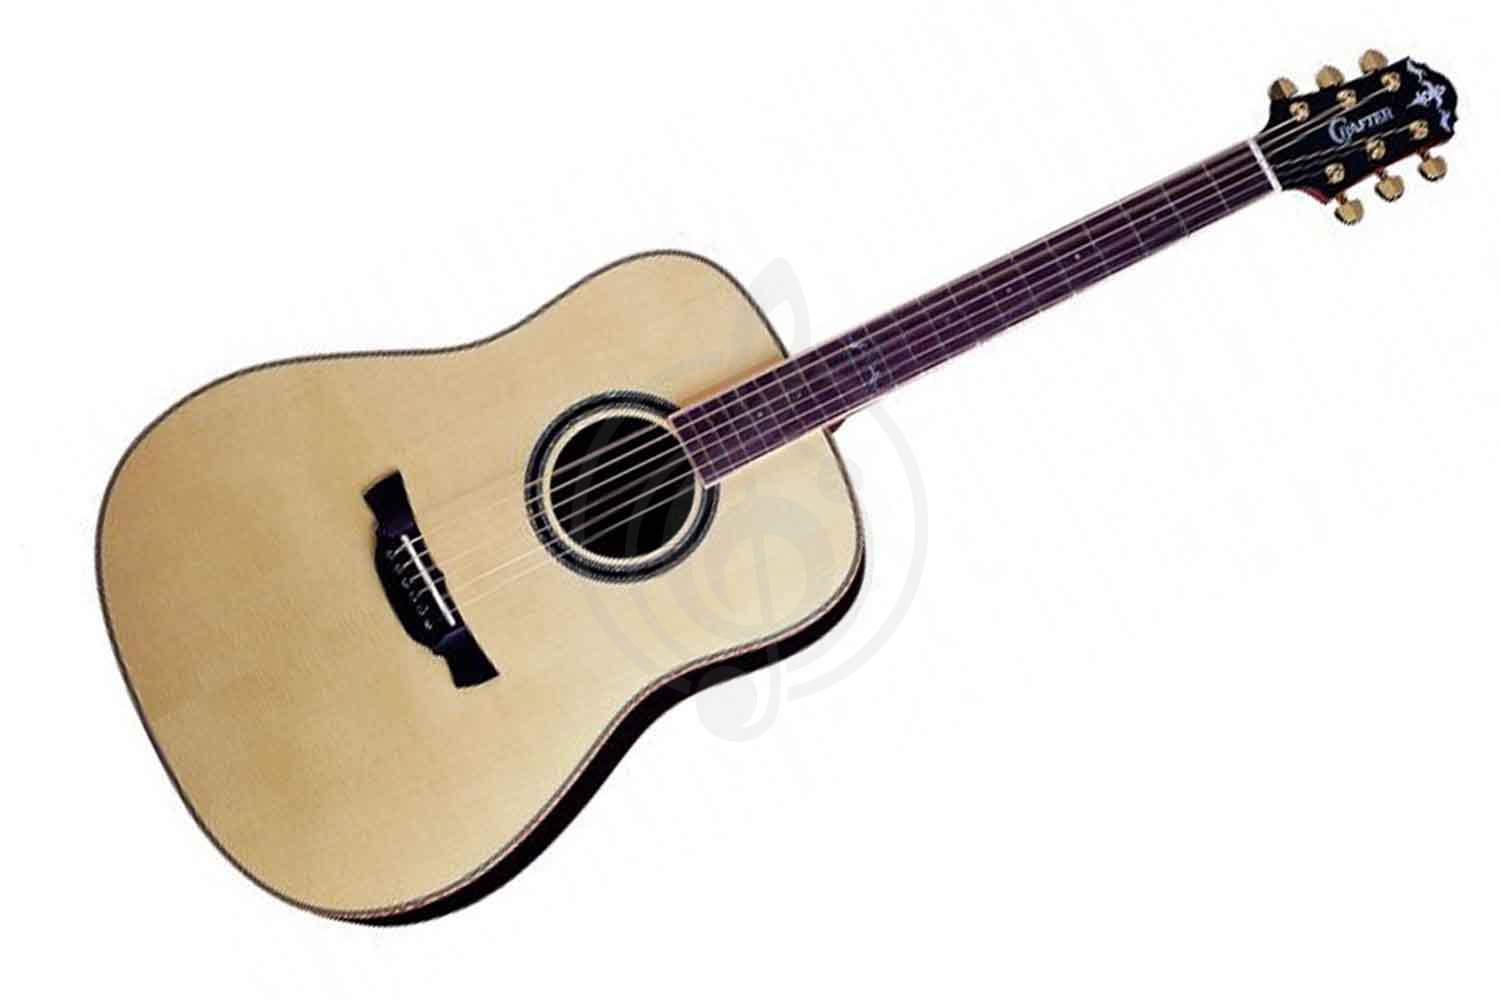 Акустическая гитара Акустические гитары Crafter CRAFTER DLX-3000 RS + Кейс - Акустическая гитара шестиструнная Крафтер DLX-3000/RS - фото 1